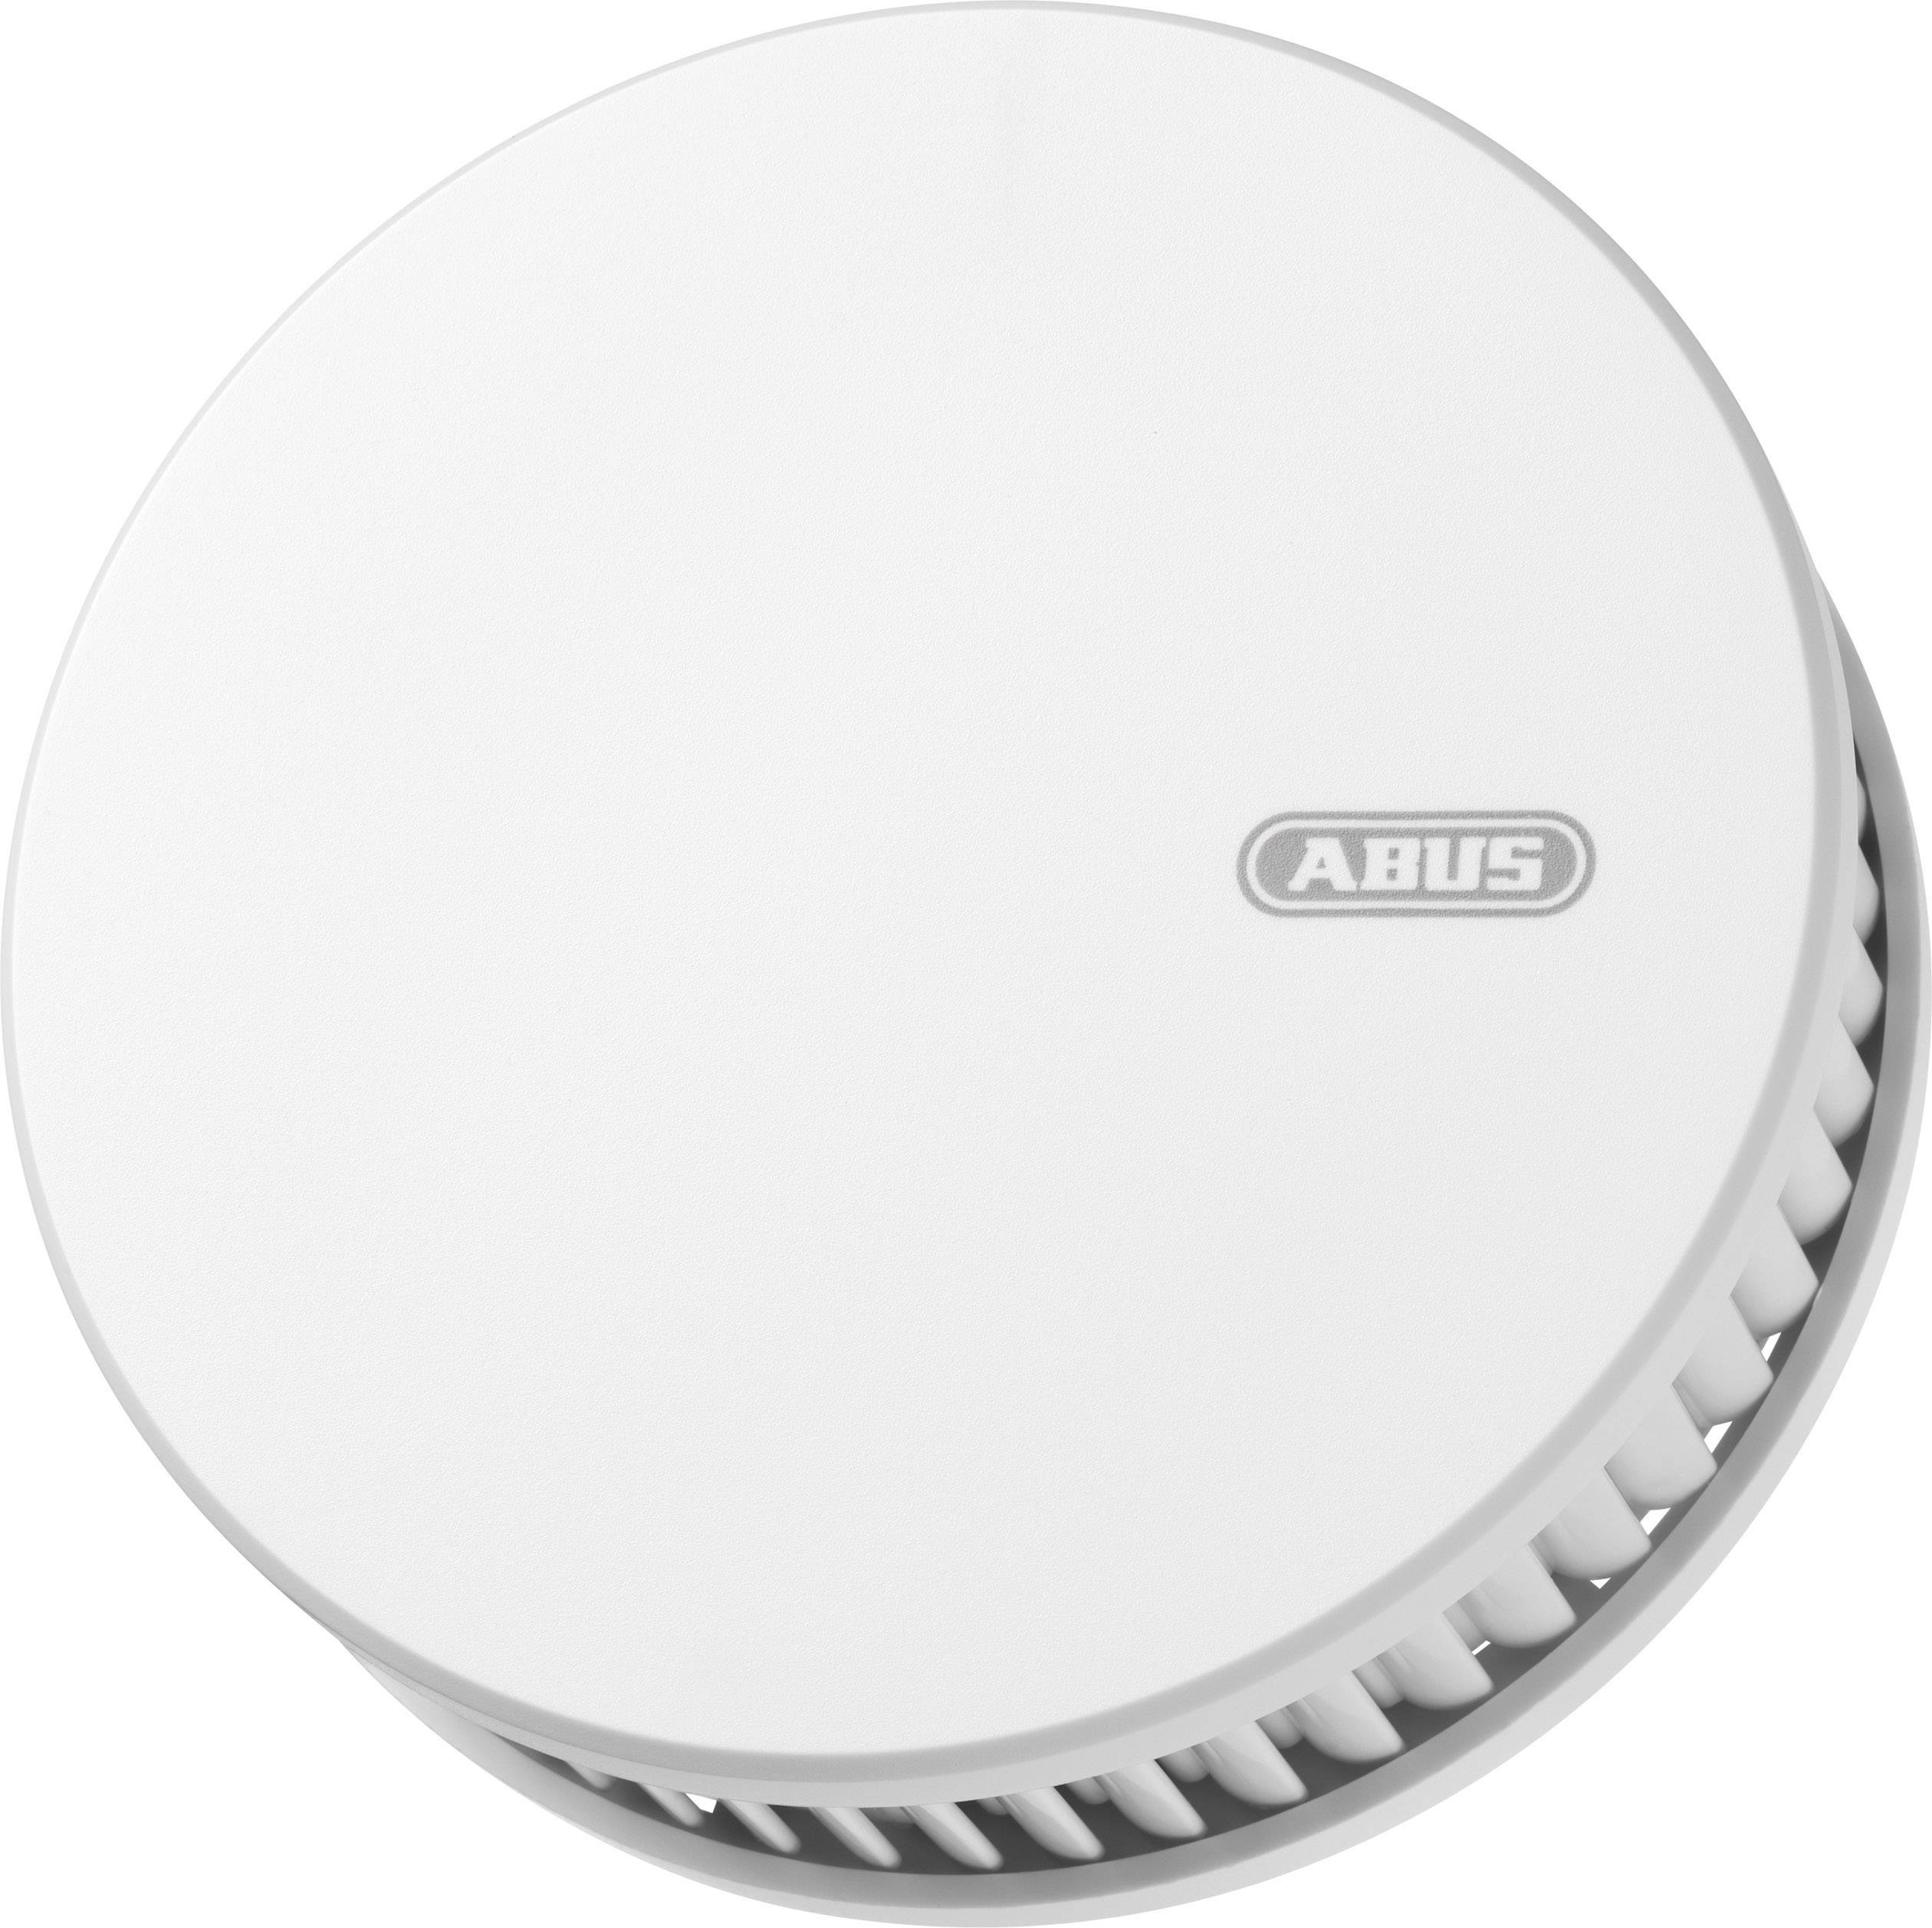 ABUS Funk-Rauch- und Hitzemelder inkl. 12 Jahres-Batterie, inkl. Magnetbefestigung, vernetzbar ABUS